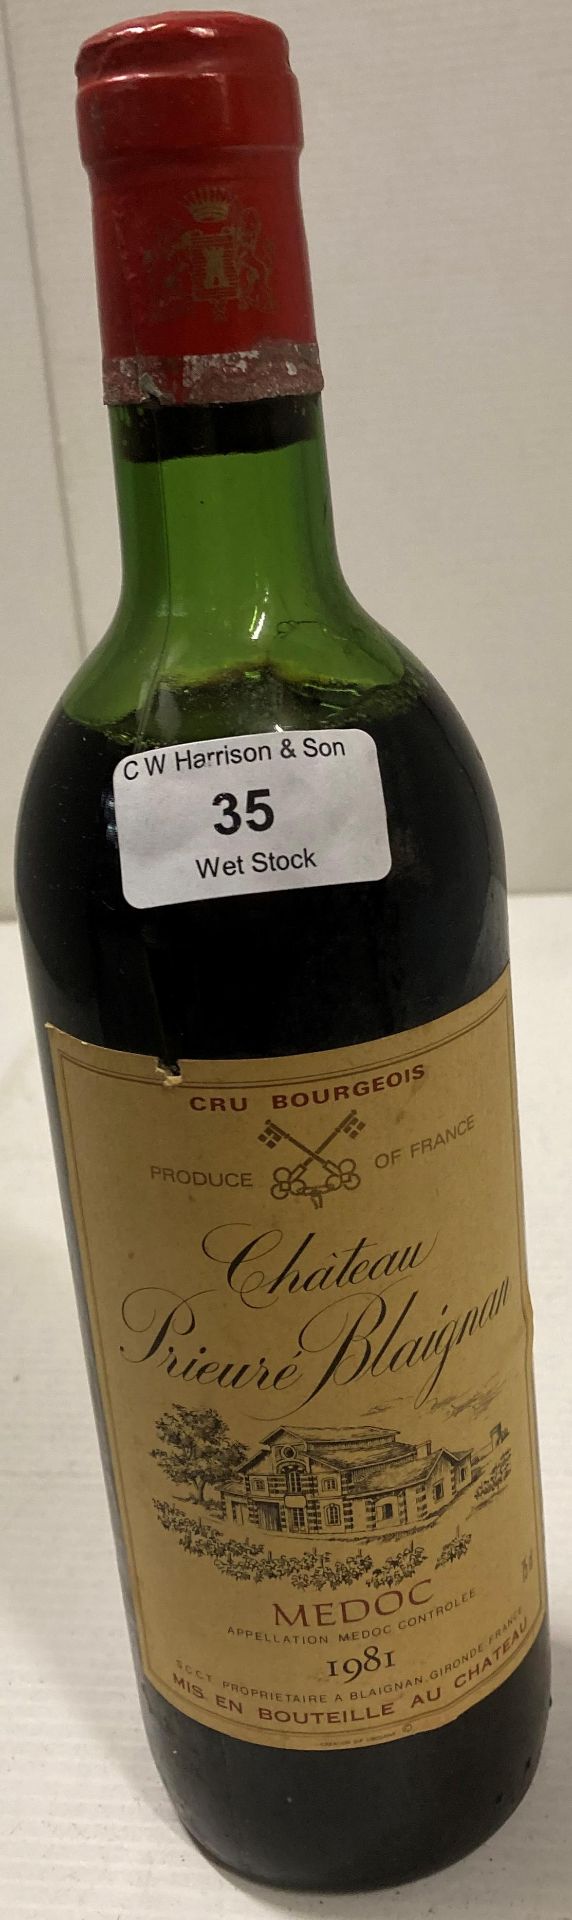 A 57cl bottle of Chateau Prieure Blaignan Medoc 1981